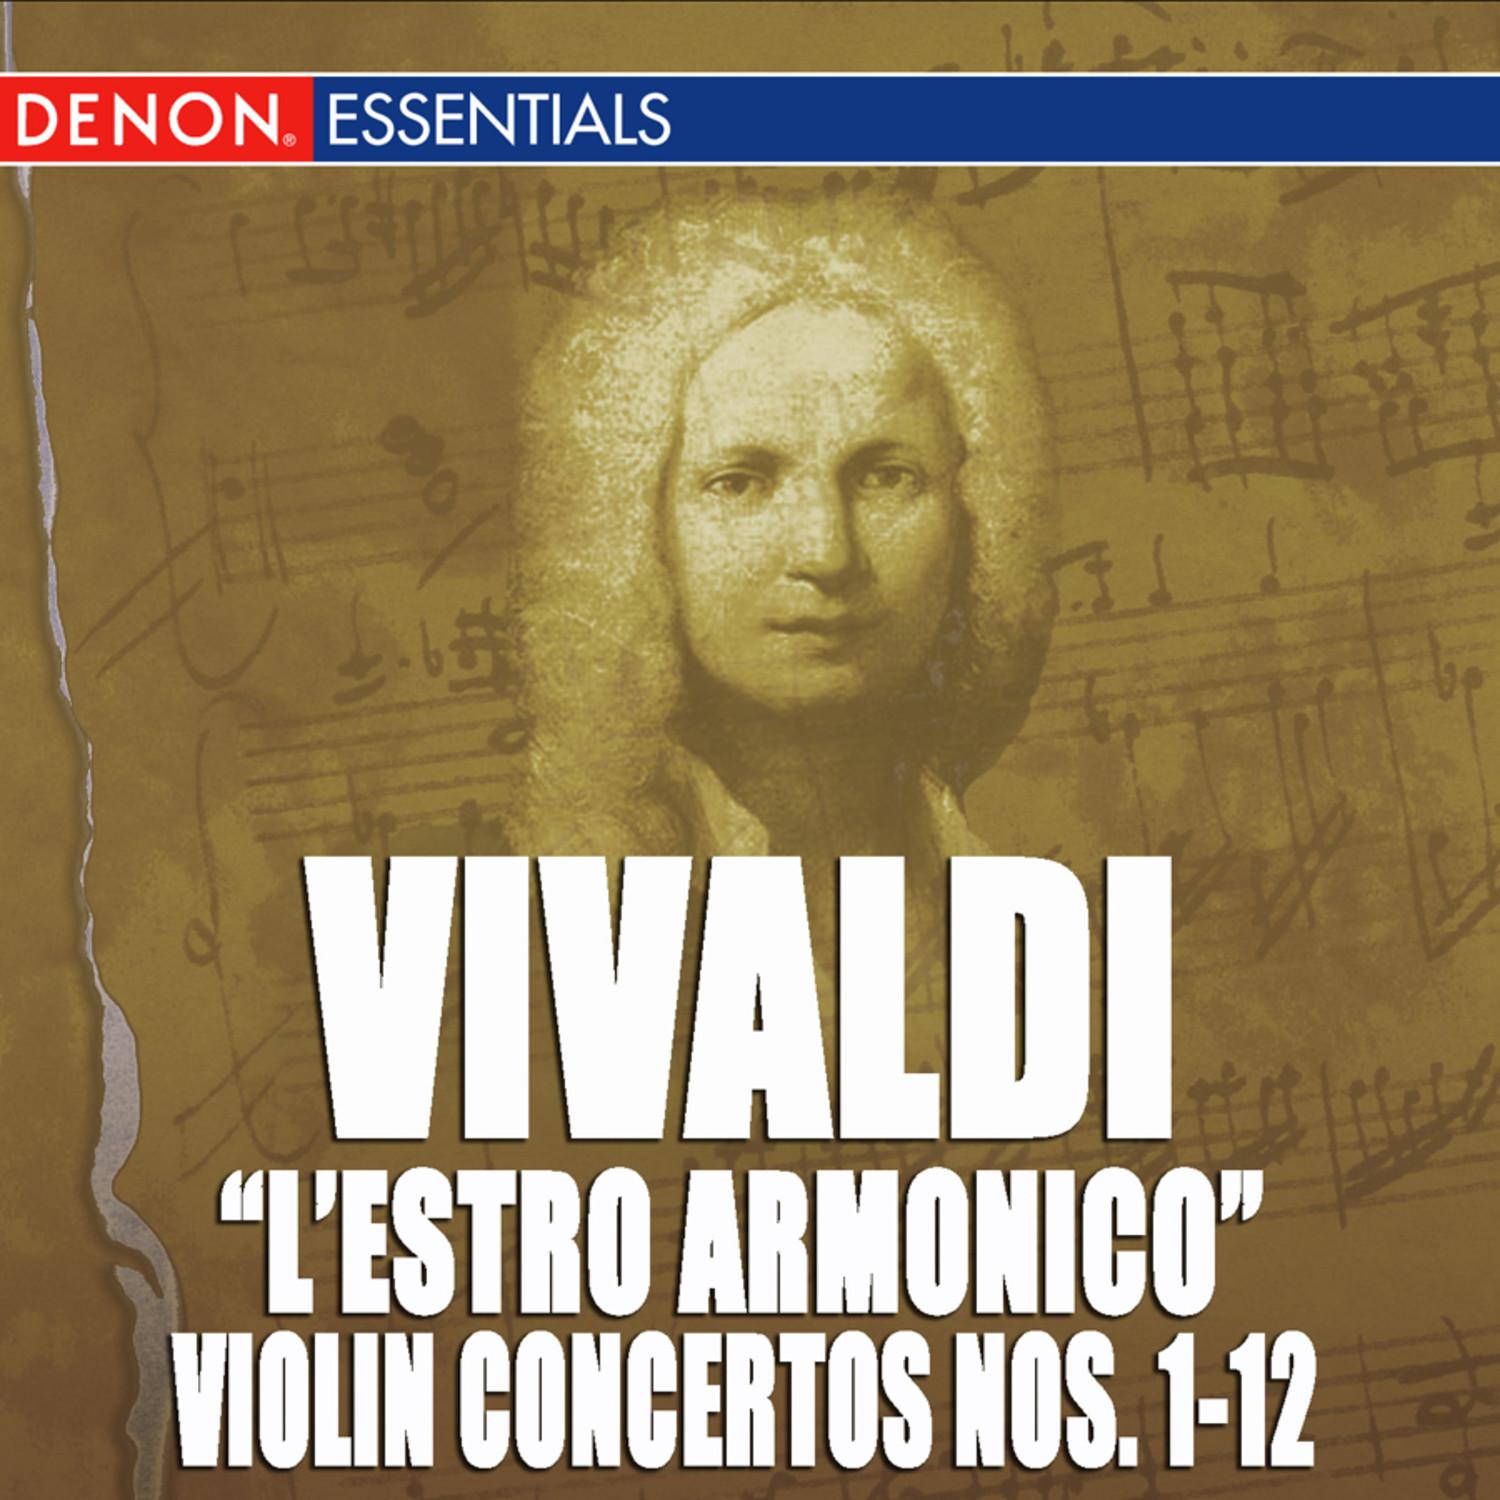 Concerto for Violin, Strings & B.c. No. 12 in E Major, Op. 3 RV 265: I. Allegro